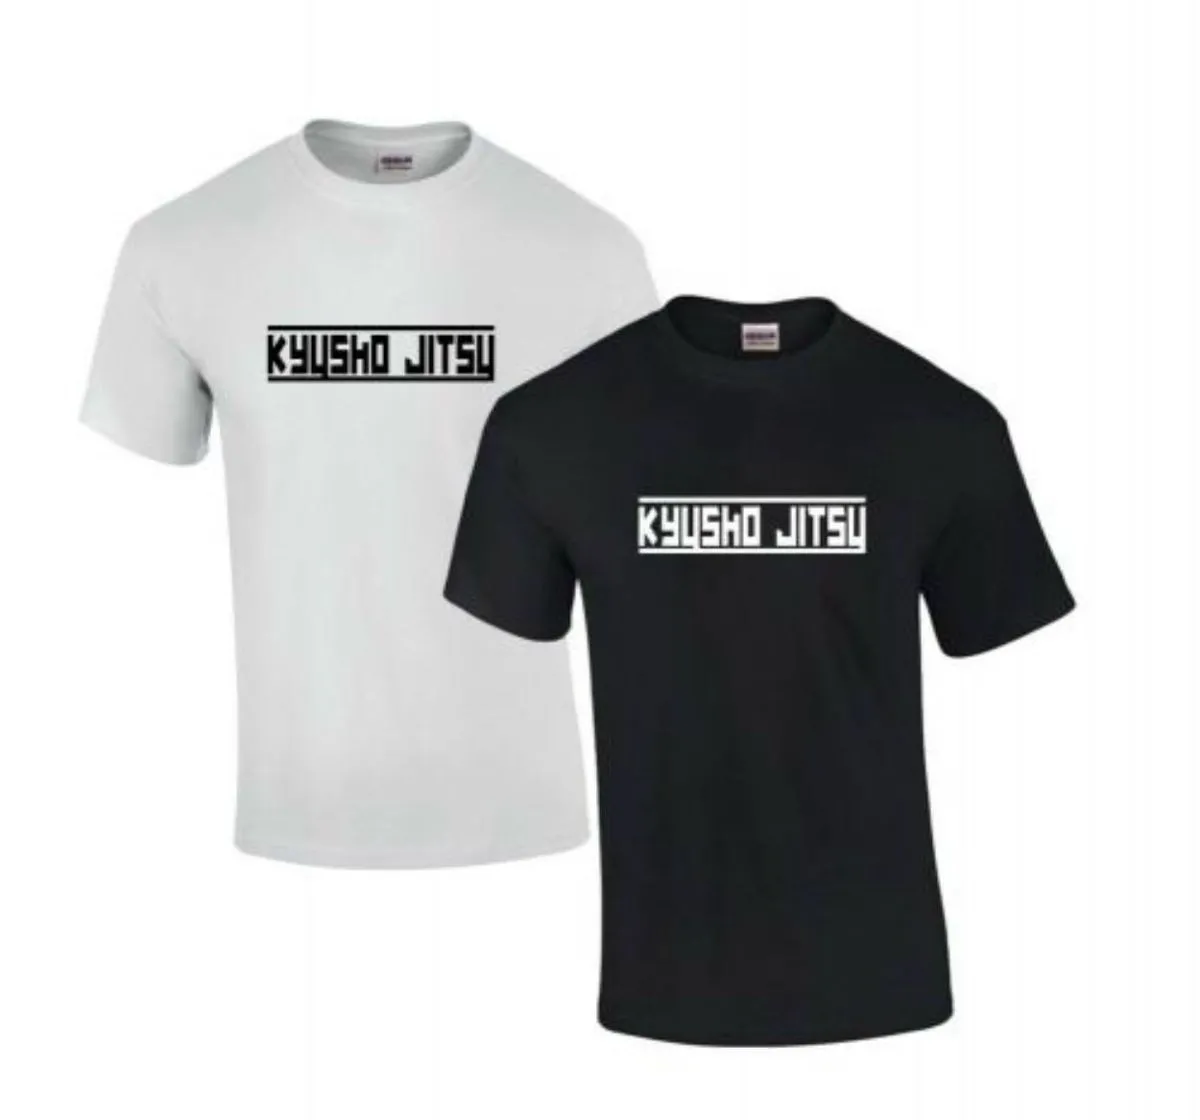 T-shirt Kyusho Jitsu